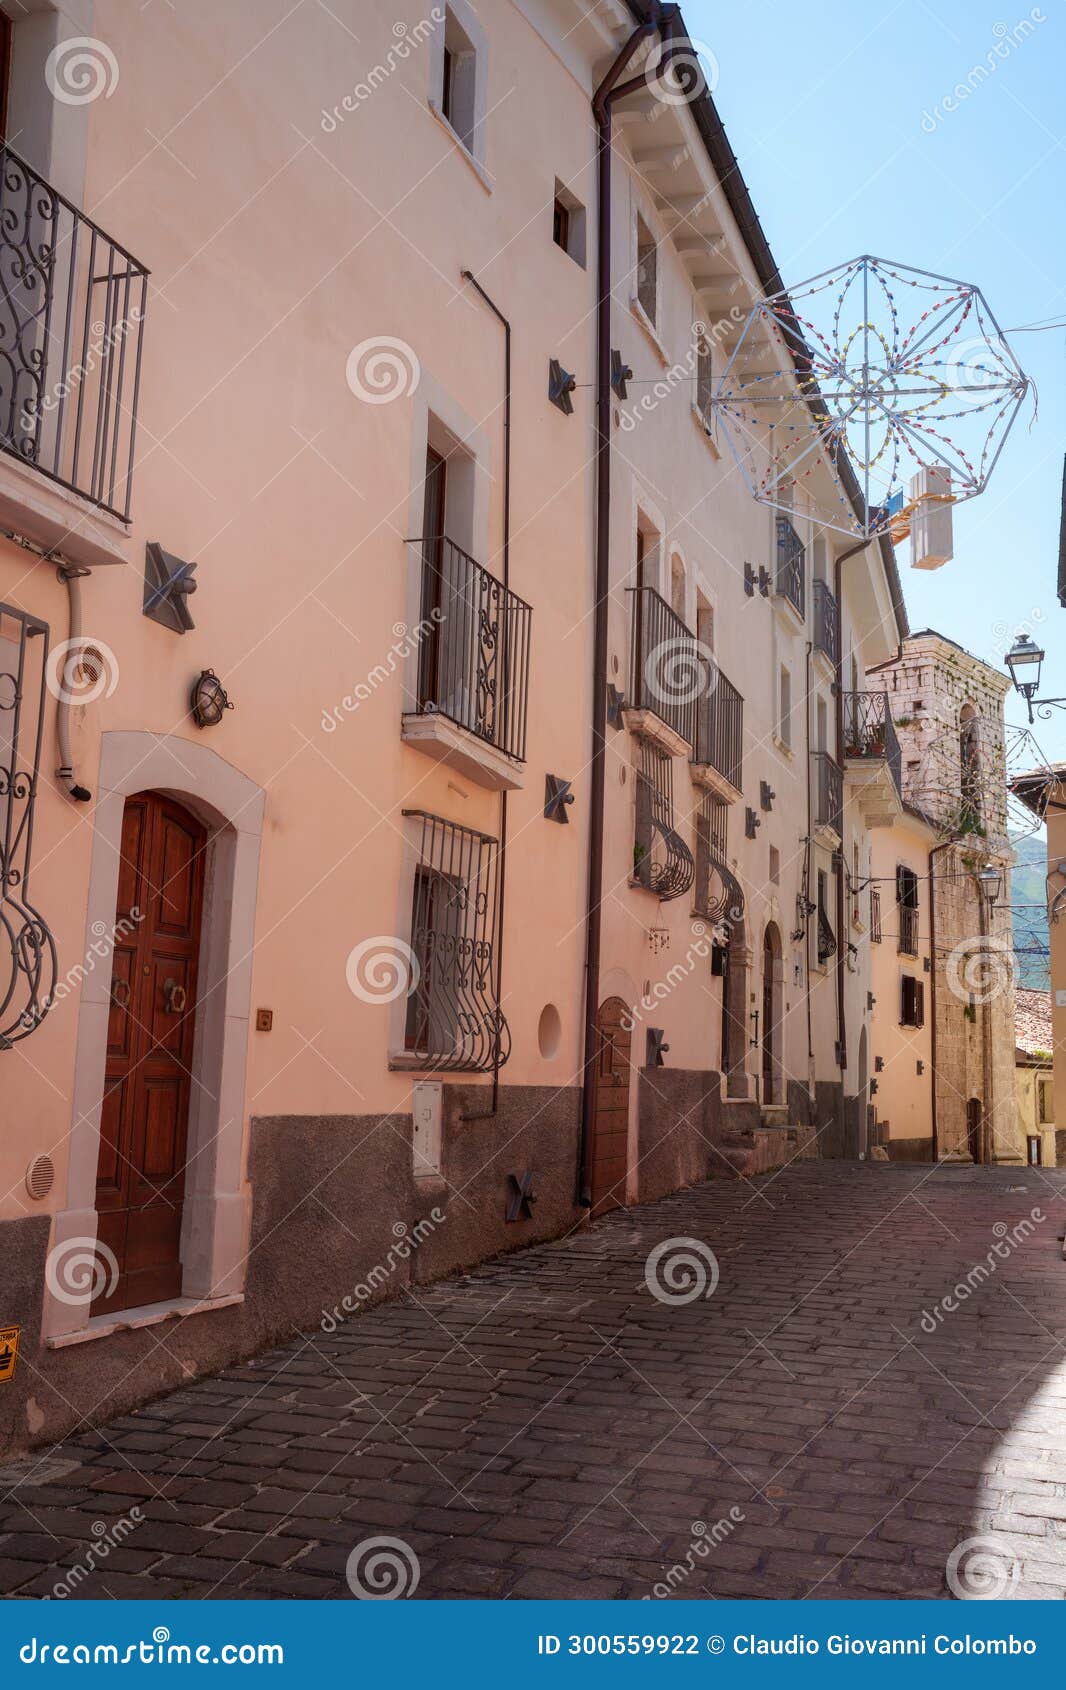 rocca di cambio, old town in abruzzo, italy